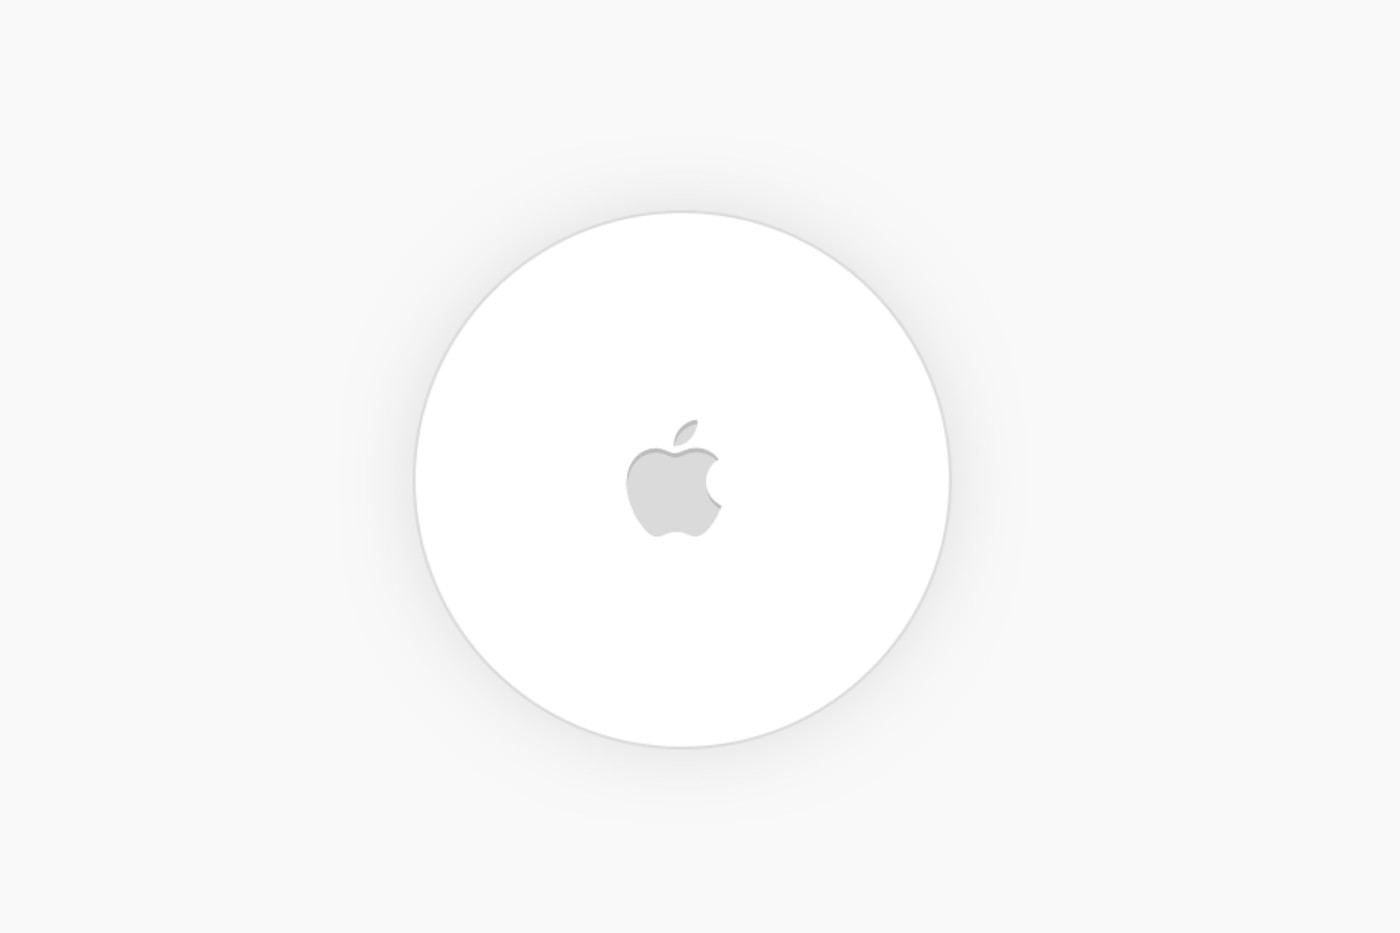 IOS 13 sisemine versioon näitab rohkem „Apple Tag” üksikasju